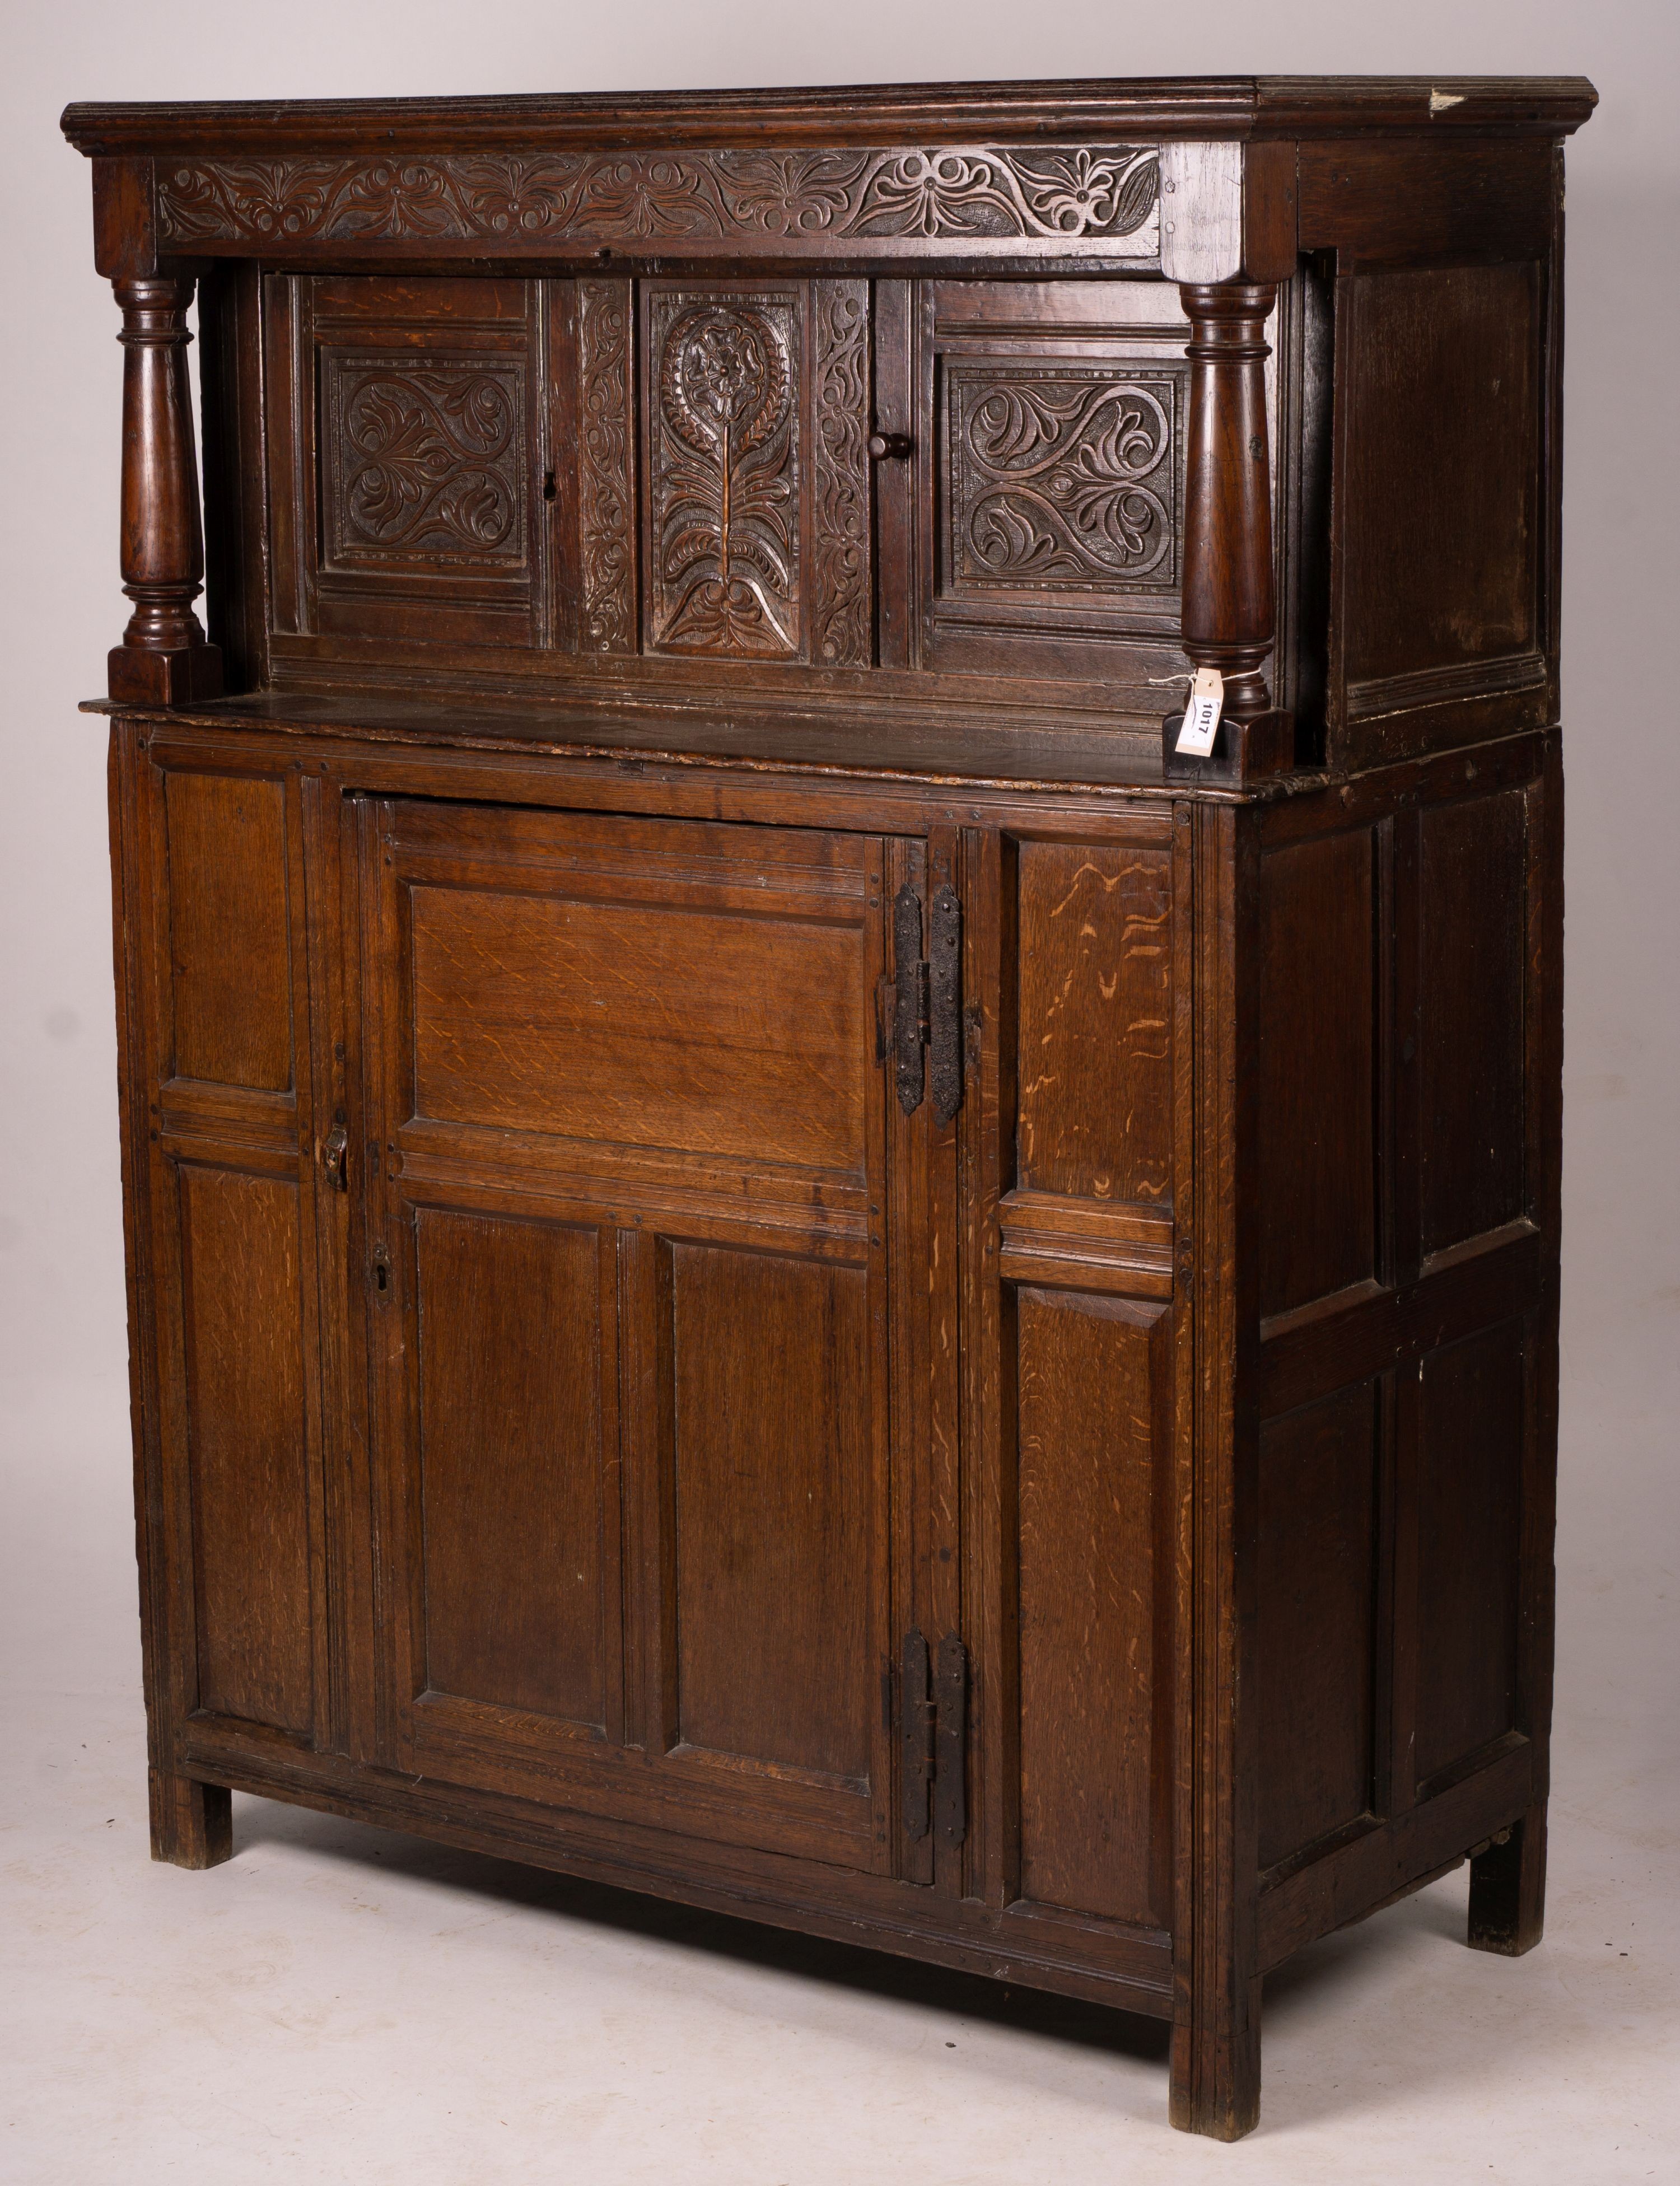 An early 18th century oak court cupboard, width 128cm, depth 59cm, height 172cm